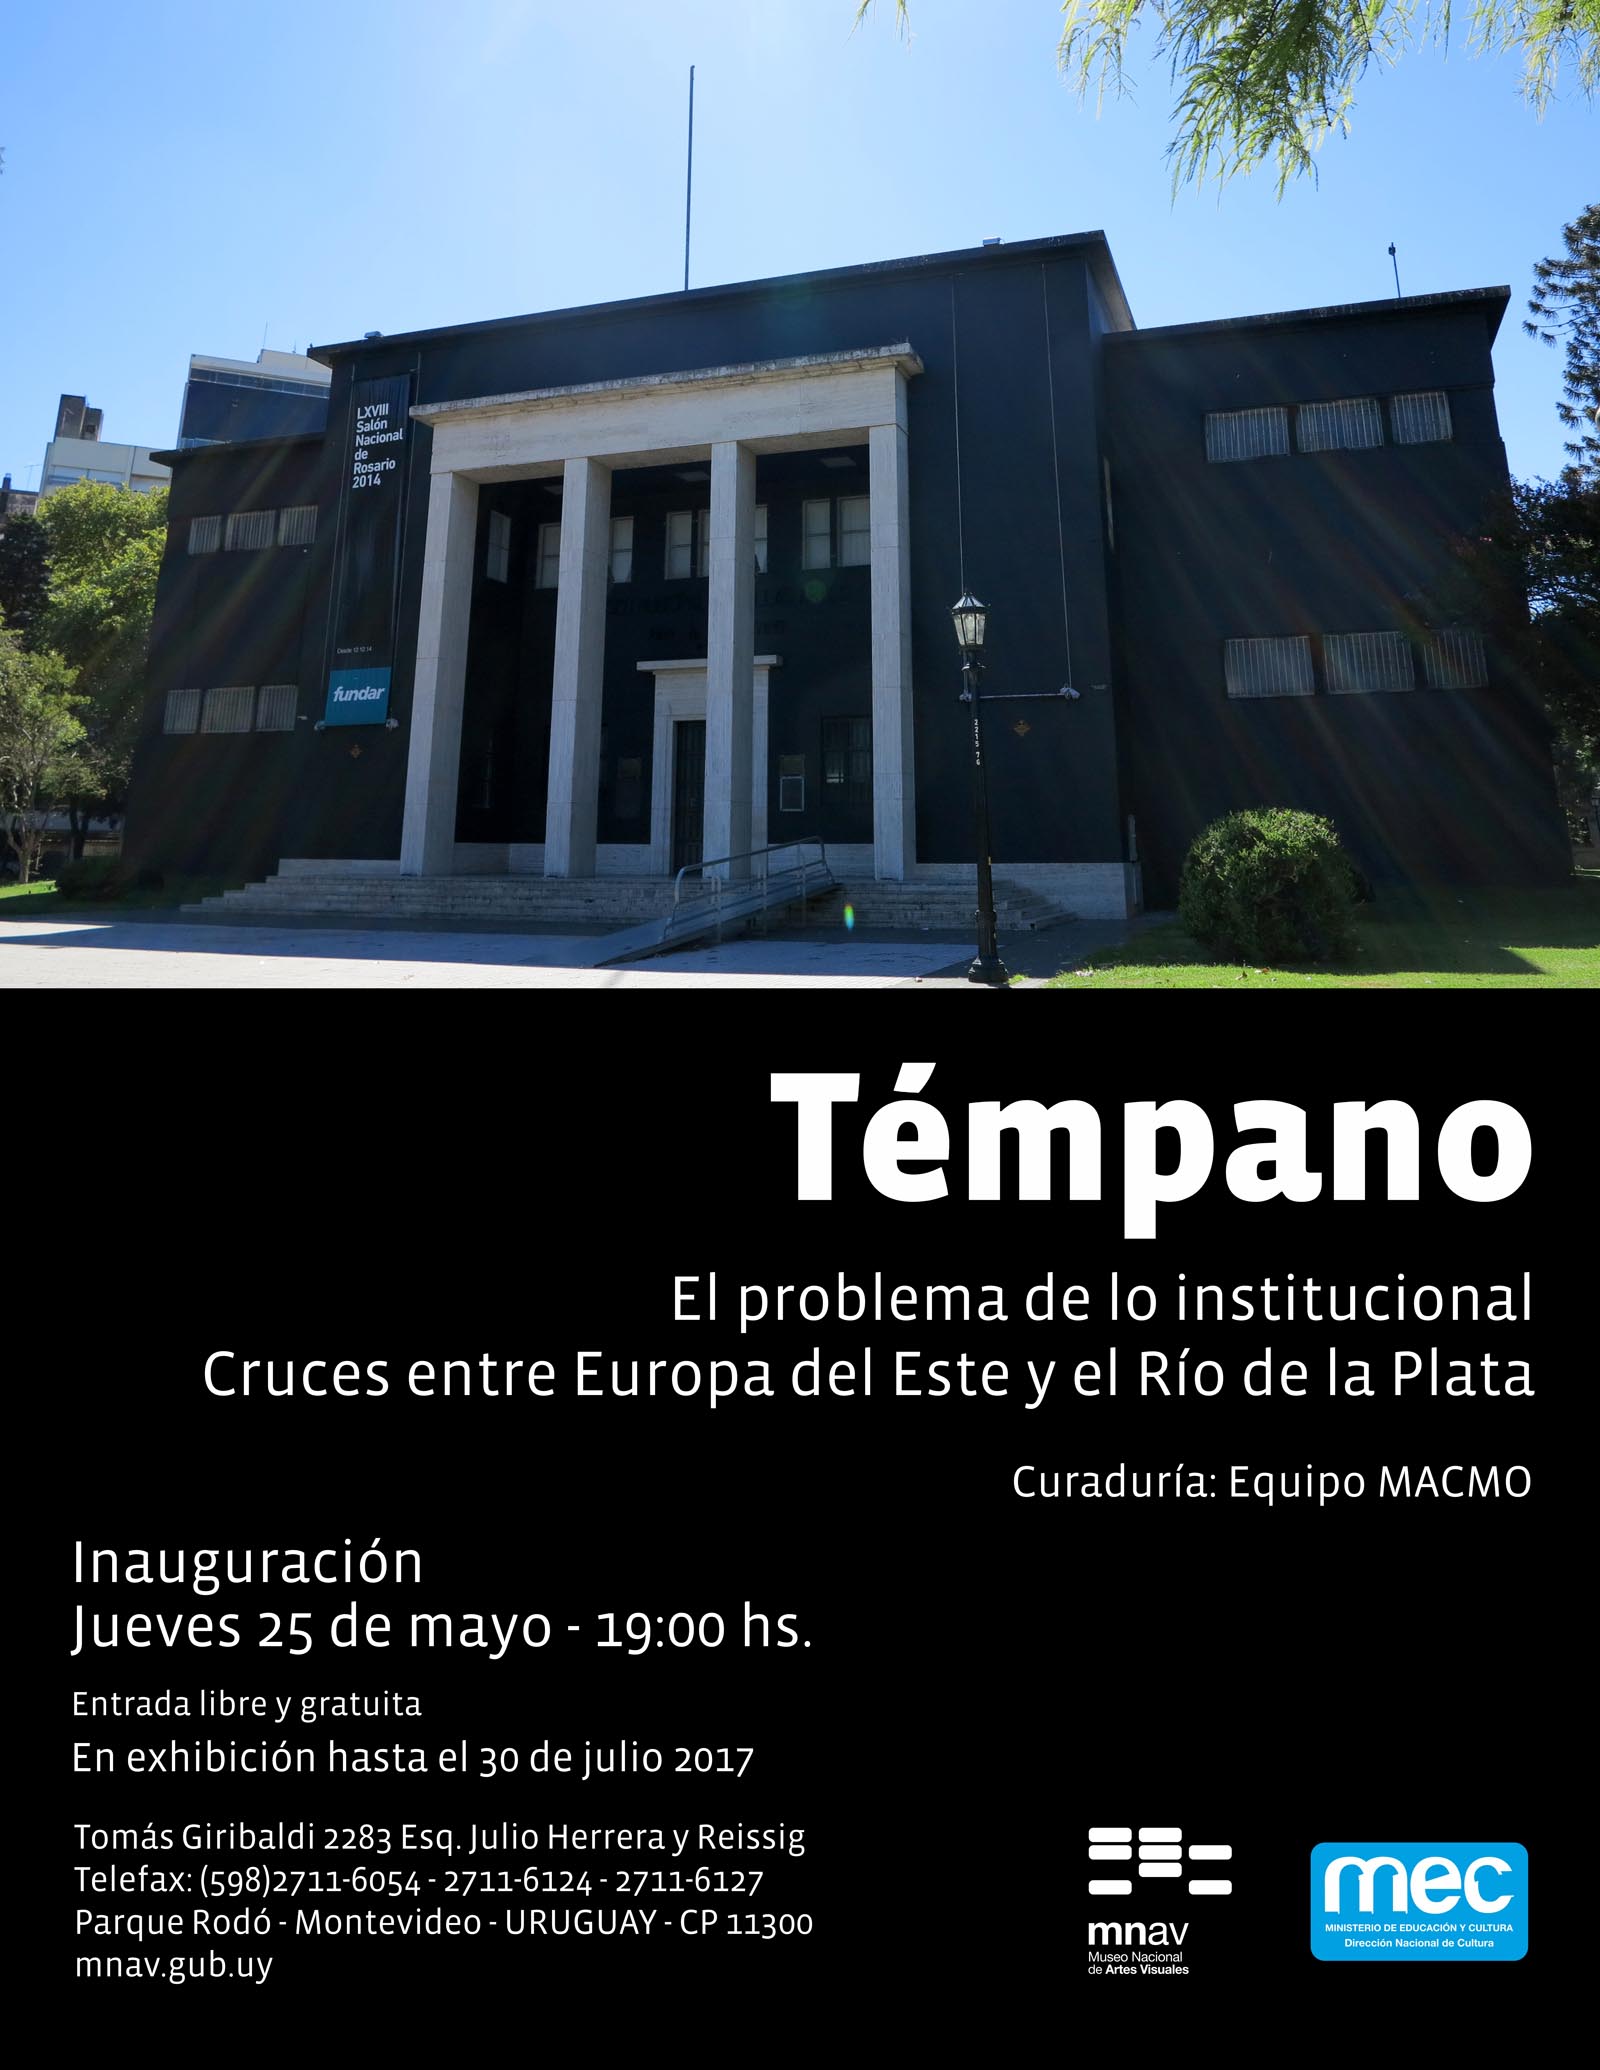 Invitación - Museo Nacional de Artes Visuales